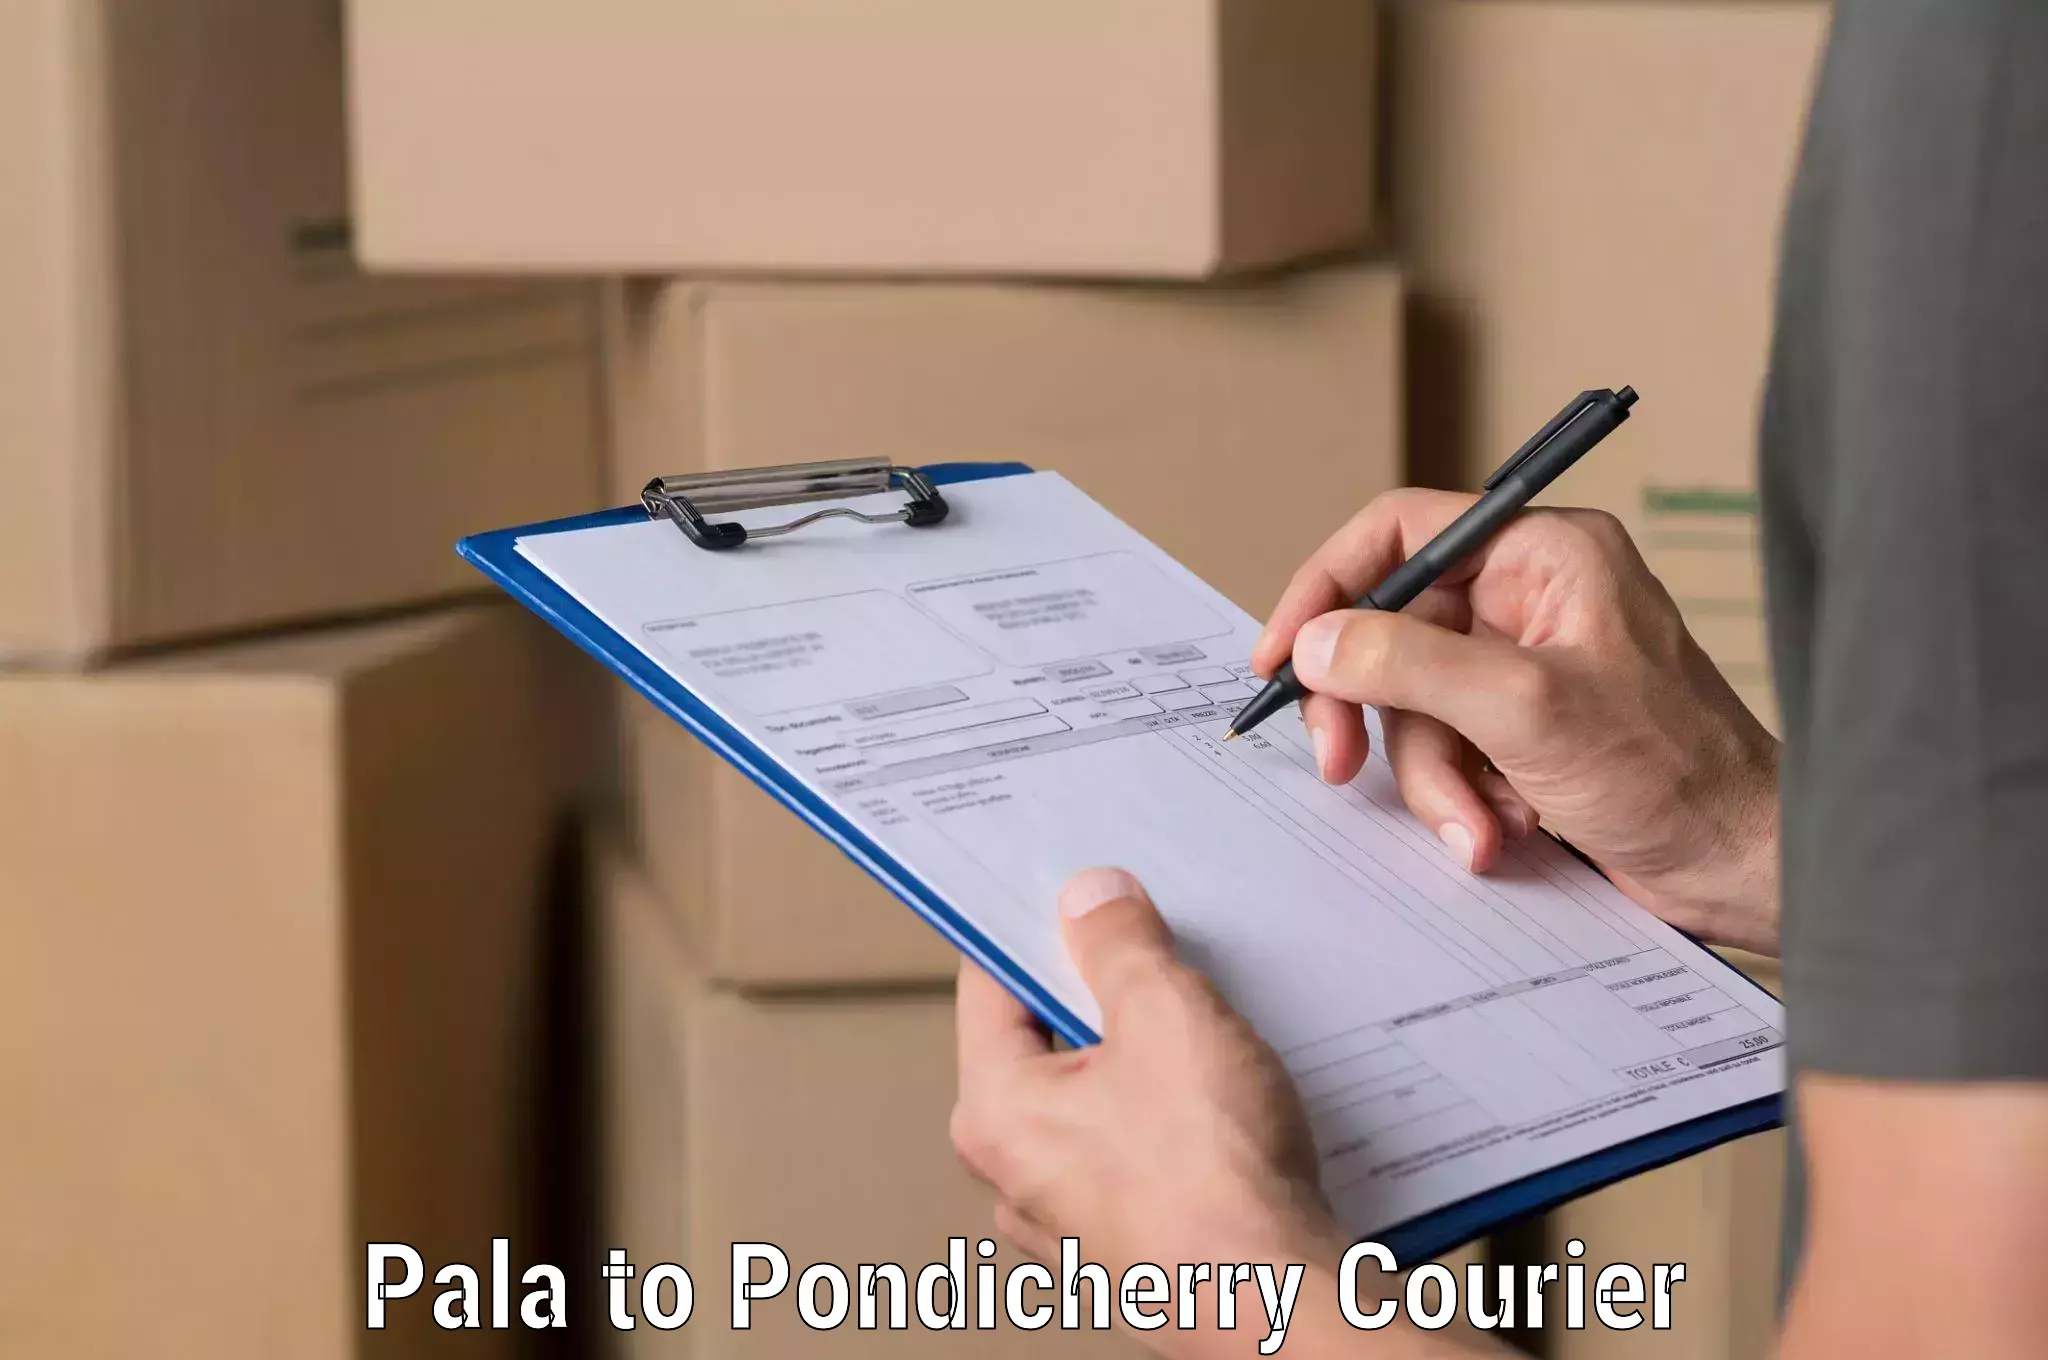 International parcel service Pala to Pondicherry University